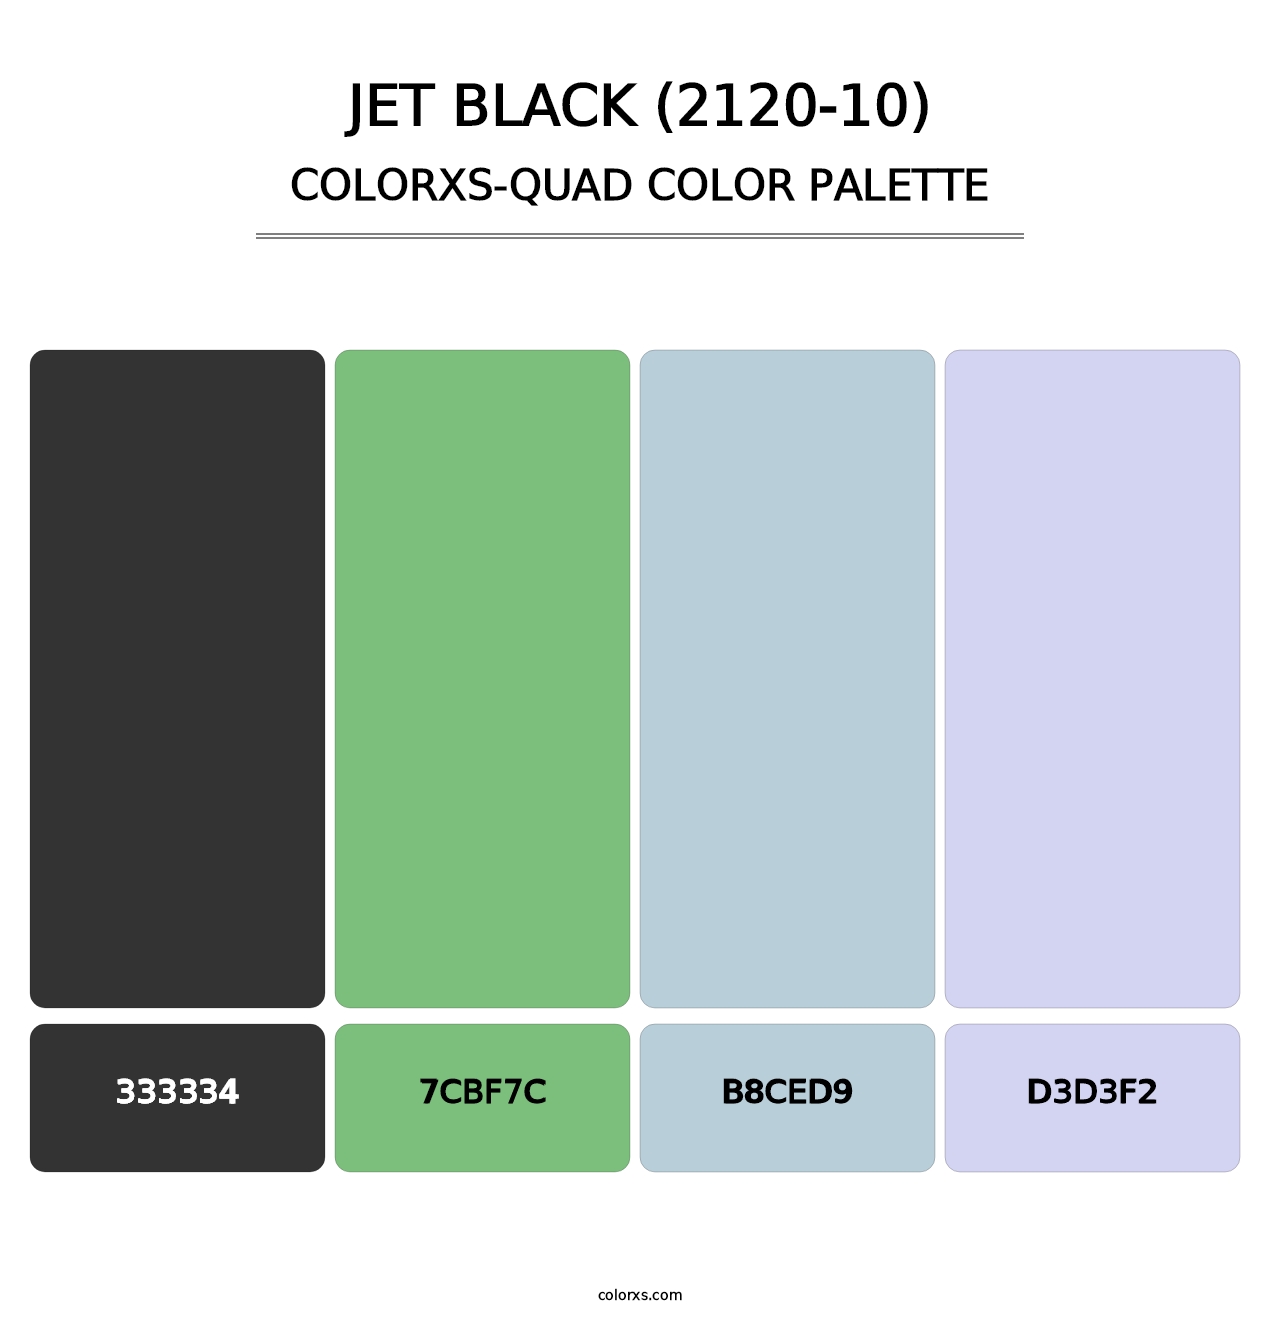 Jet Black (2120-10) - Colorxs Quad Palette